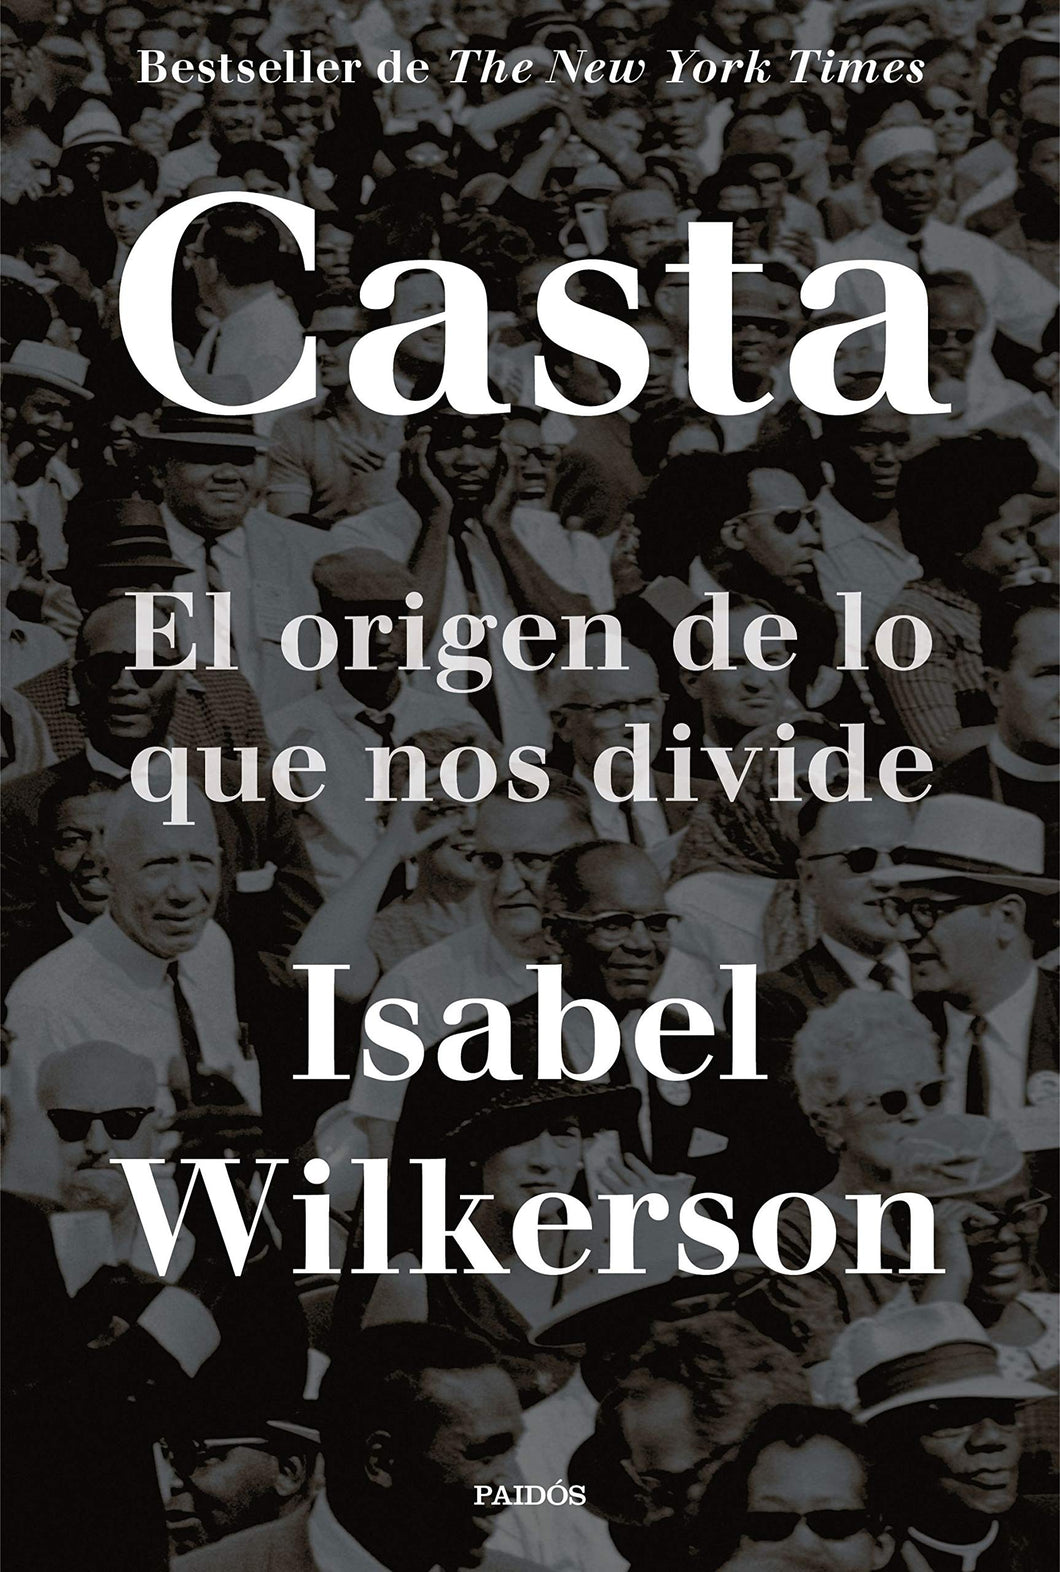 CASTA: EL ORIGEN DE LO QUE NOS DIVIDE - Isabel Wilkerson